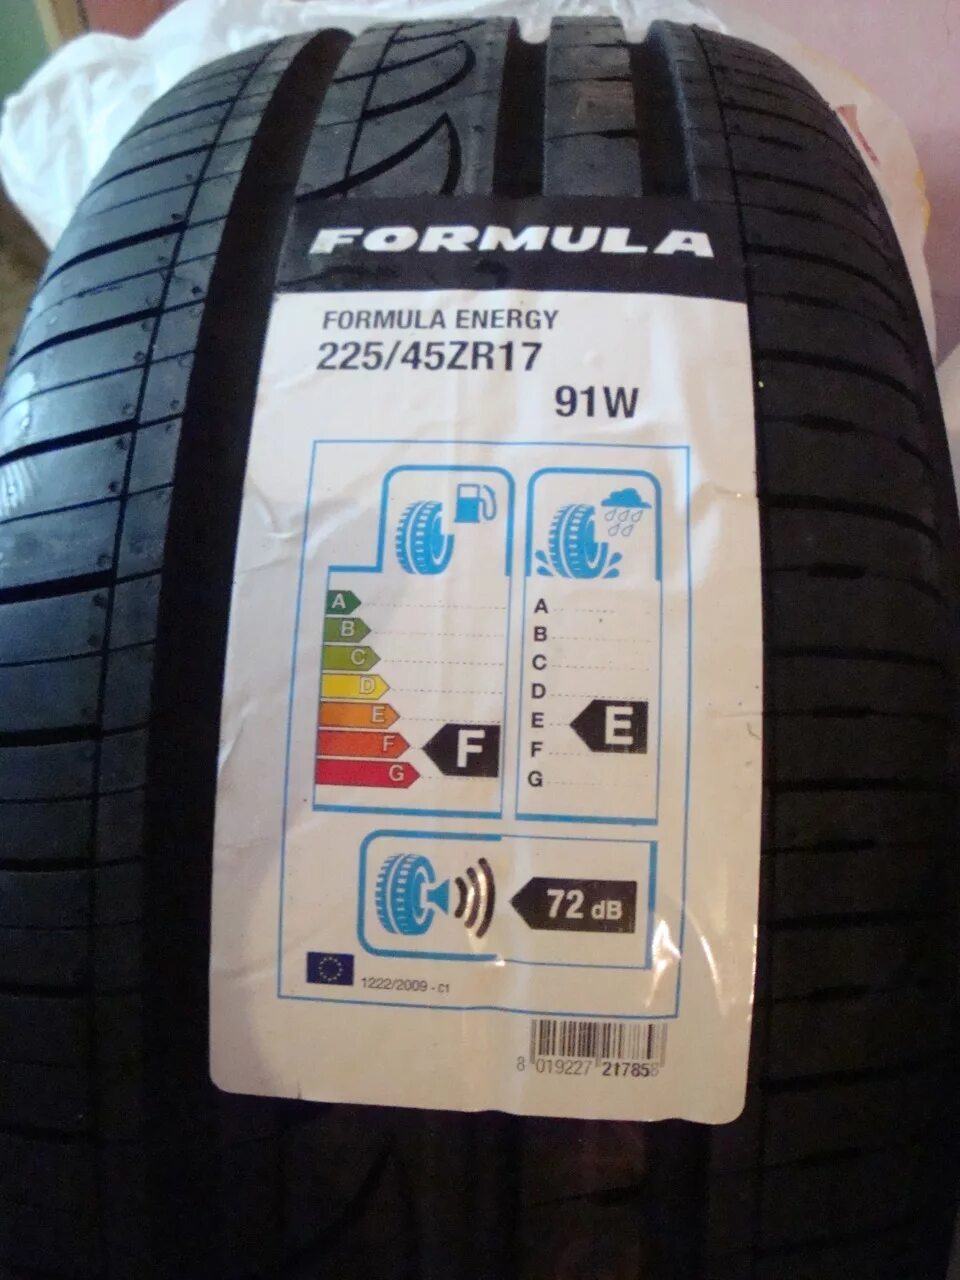 Formula Energy 225/45 r17. Formula 225/45r17 94y XL Energy. 225/45/17 Formula Energy. Pirelli Formula Energy 225/45 r17 94y XL.